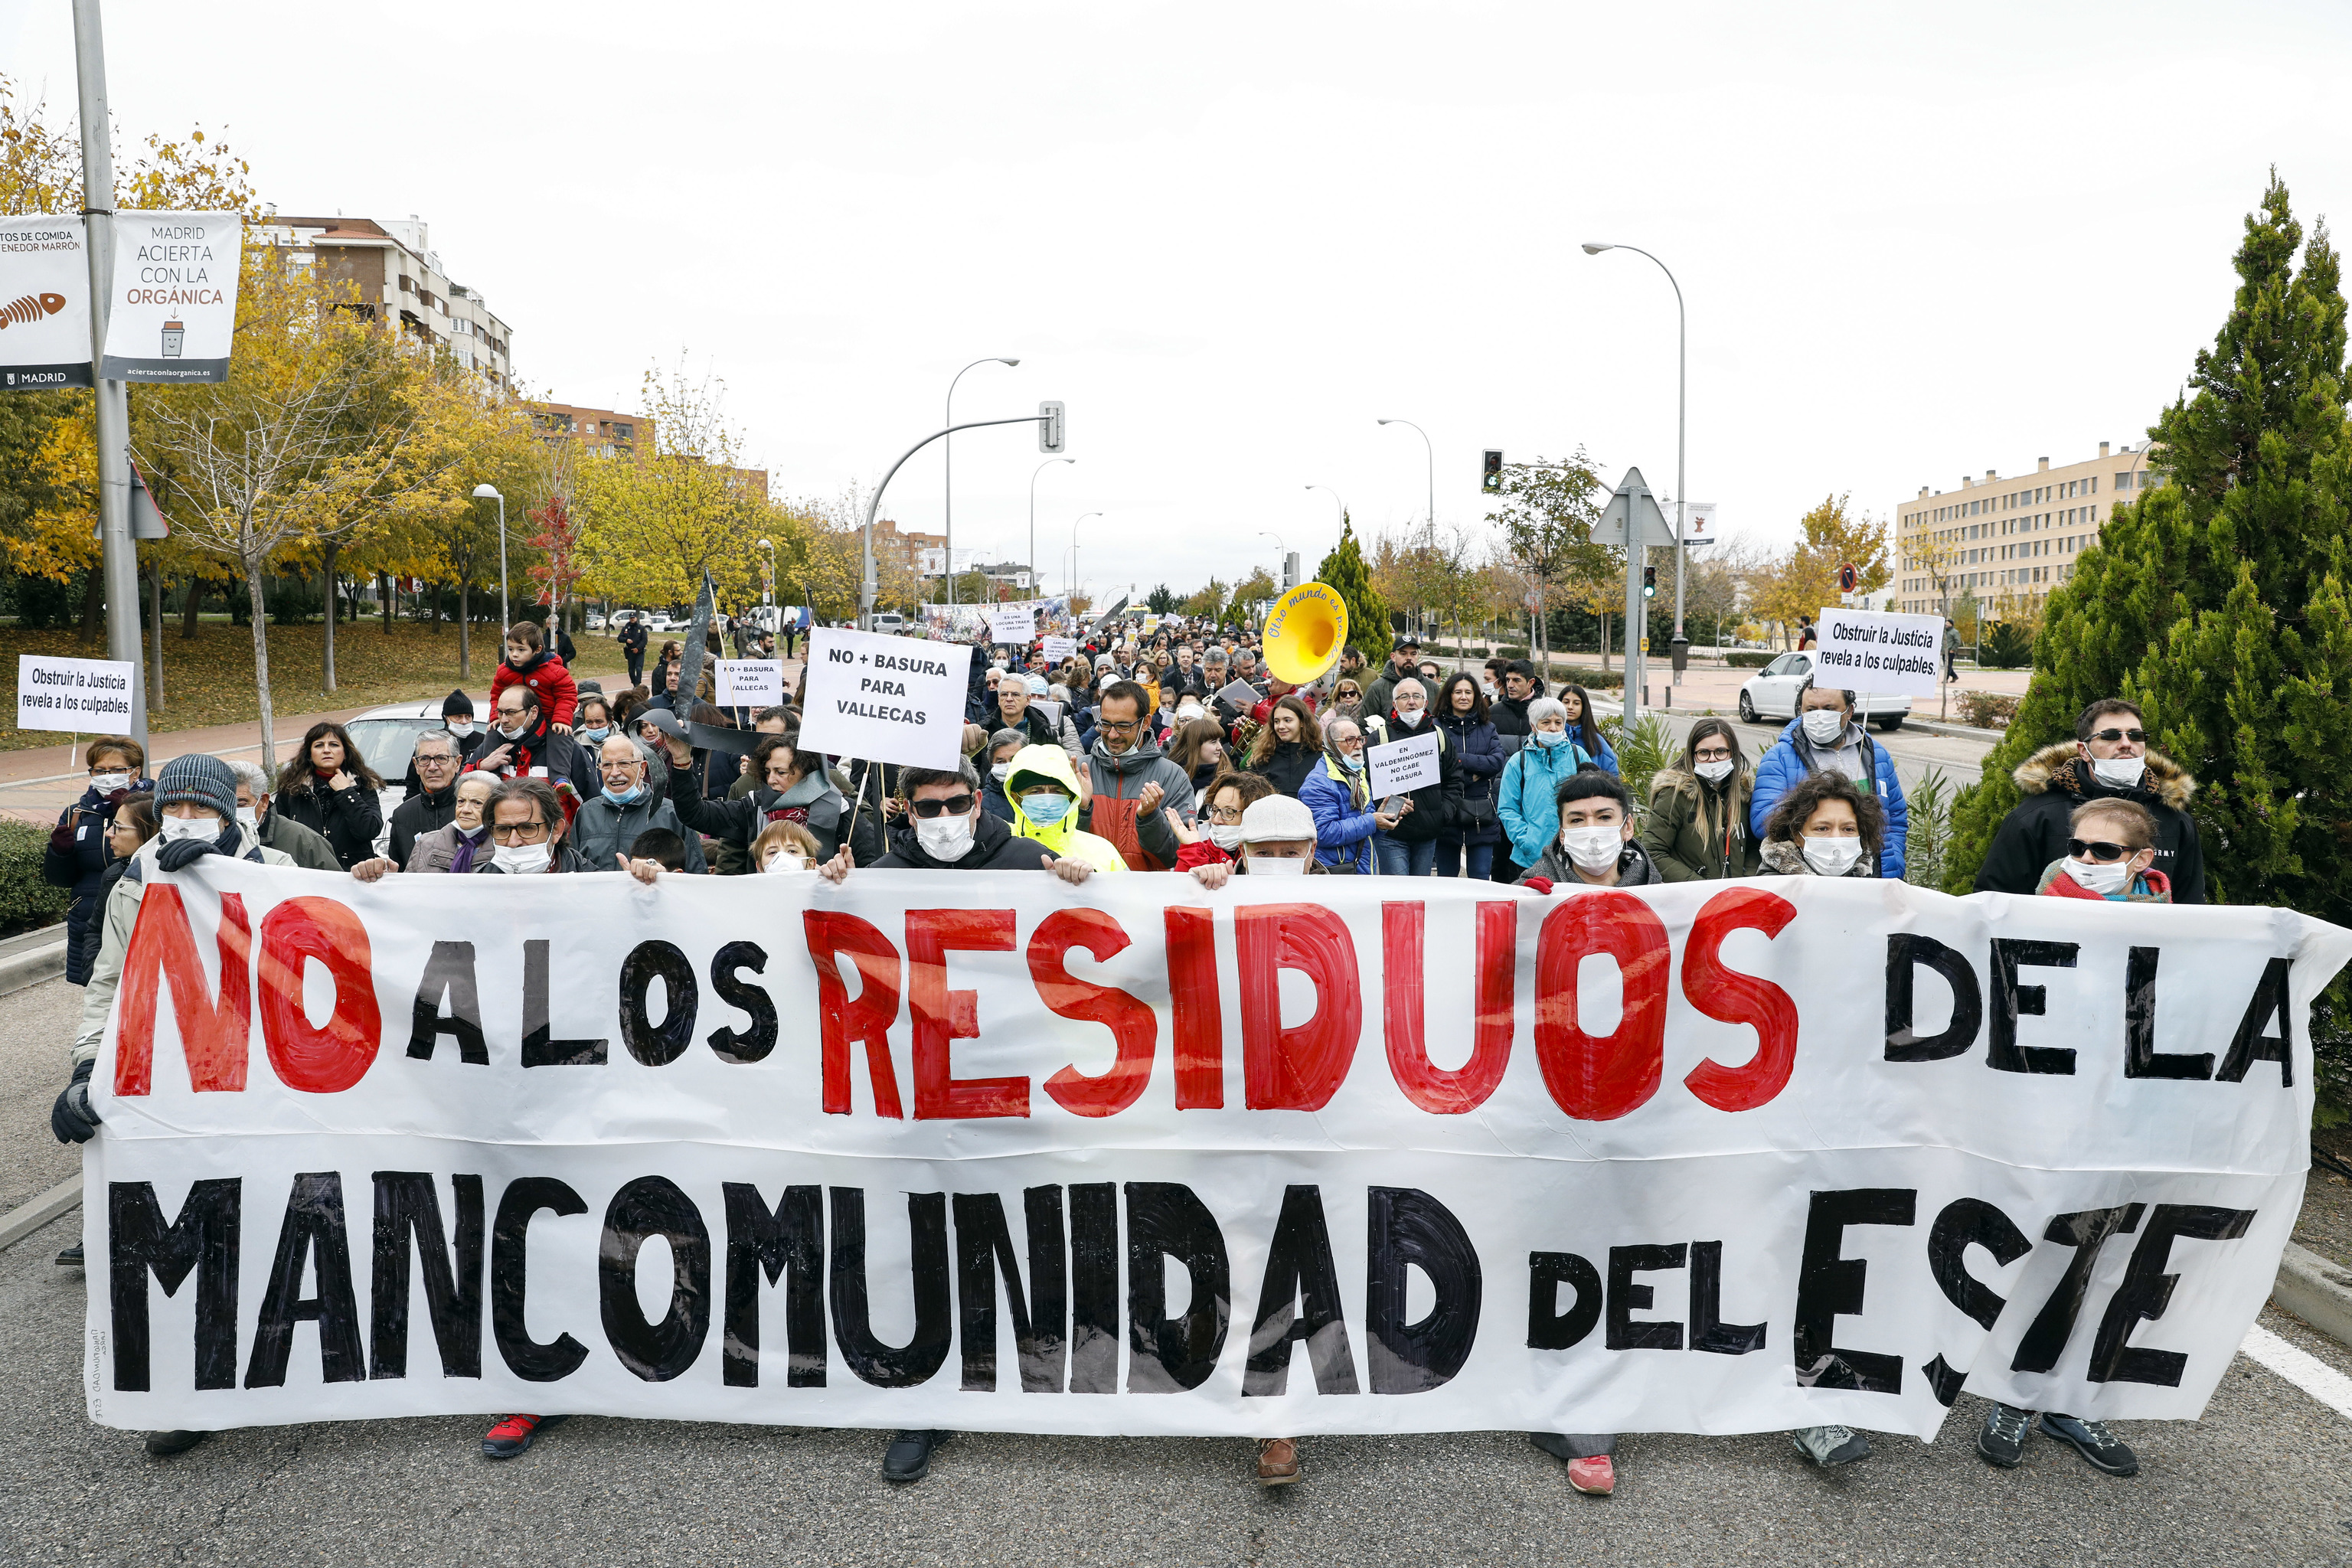 Manifestacin contra los residuos de la Mancomunidad del Este celebrada en 2018.